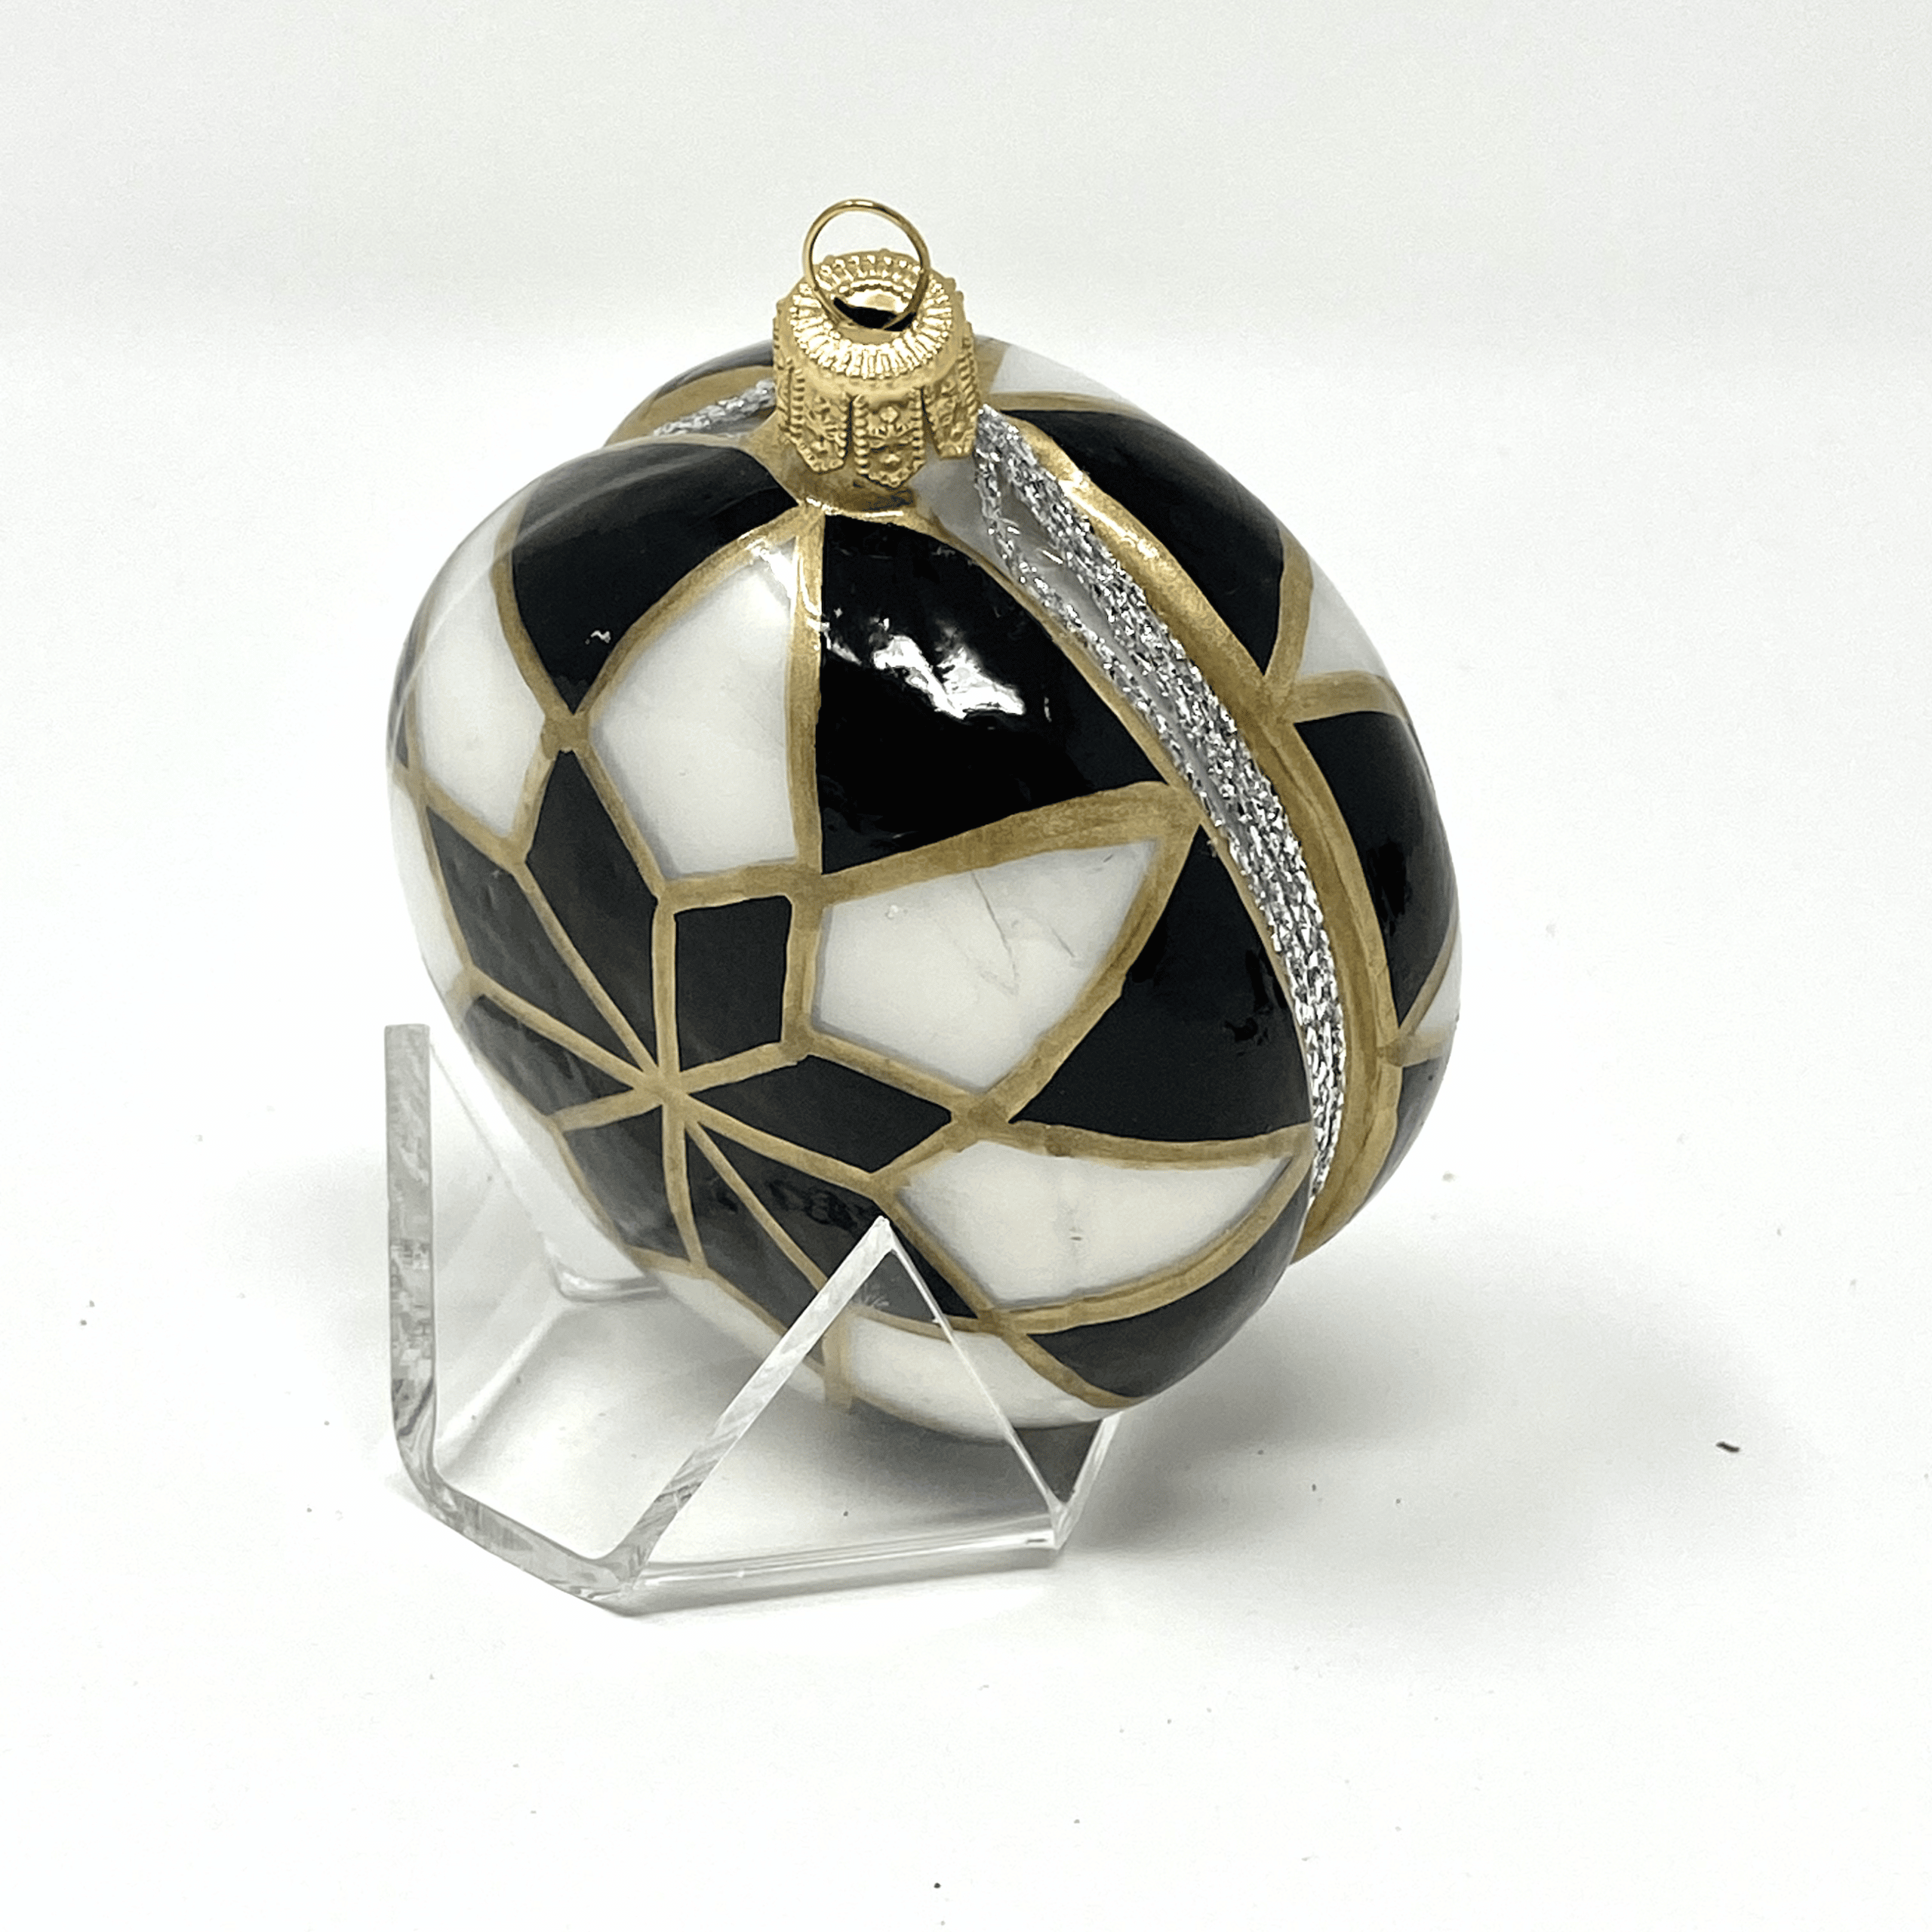 Duncan's retro yo-yo glass ornament